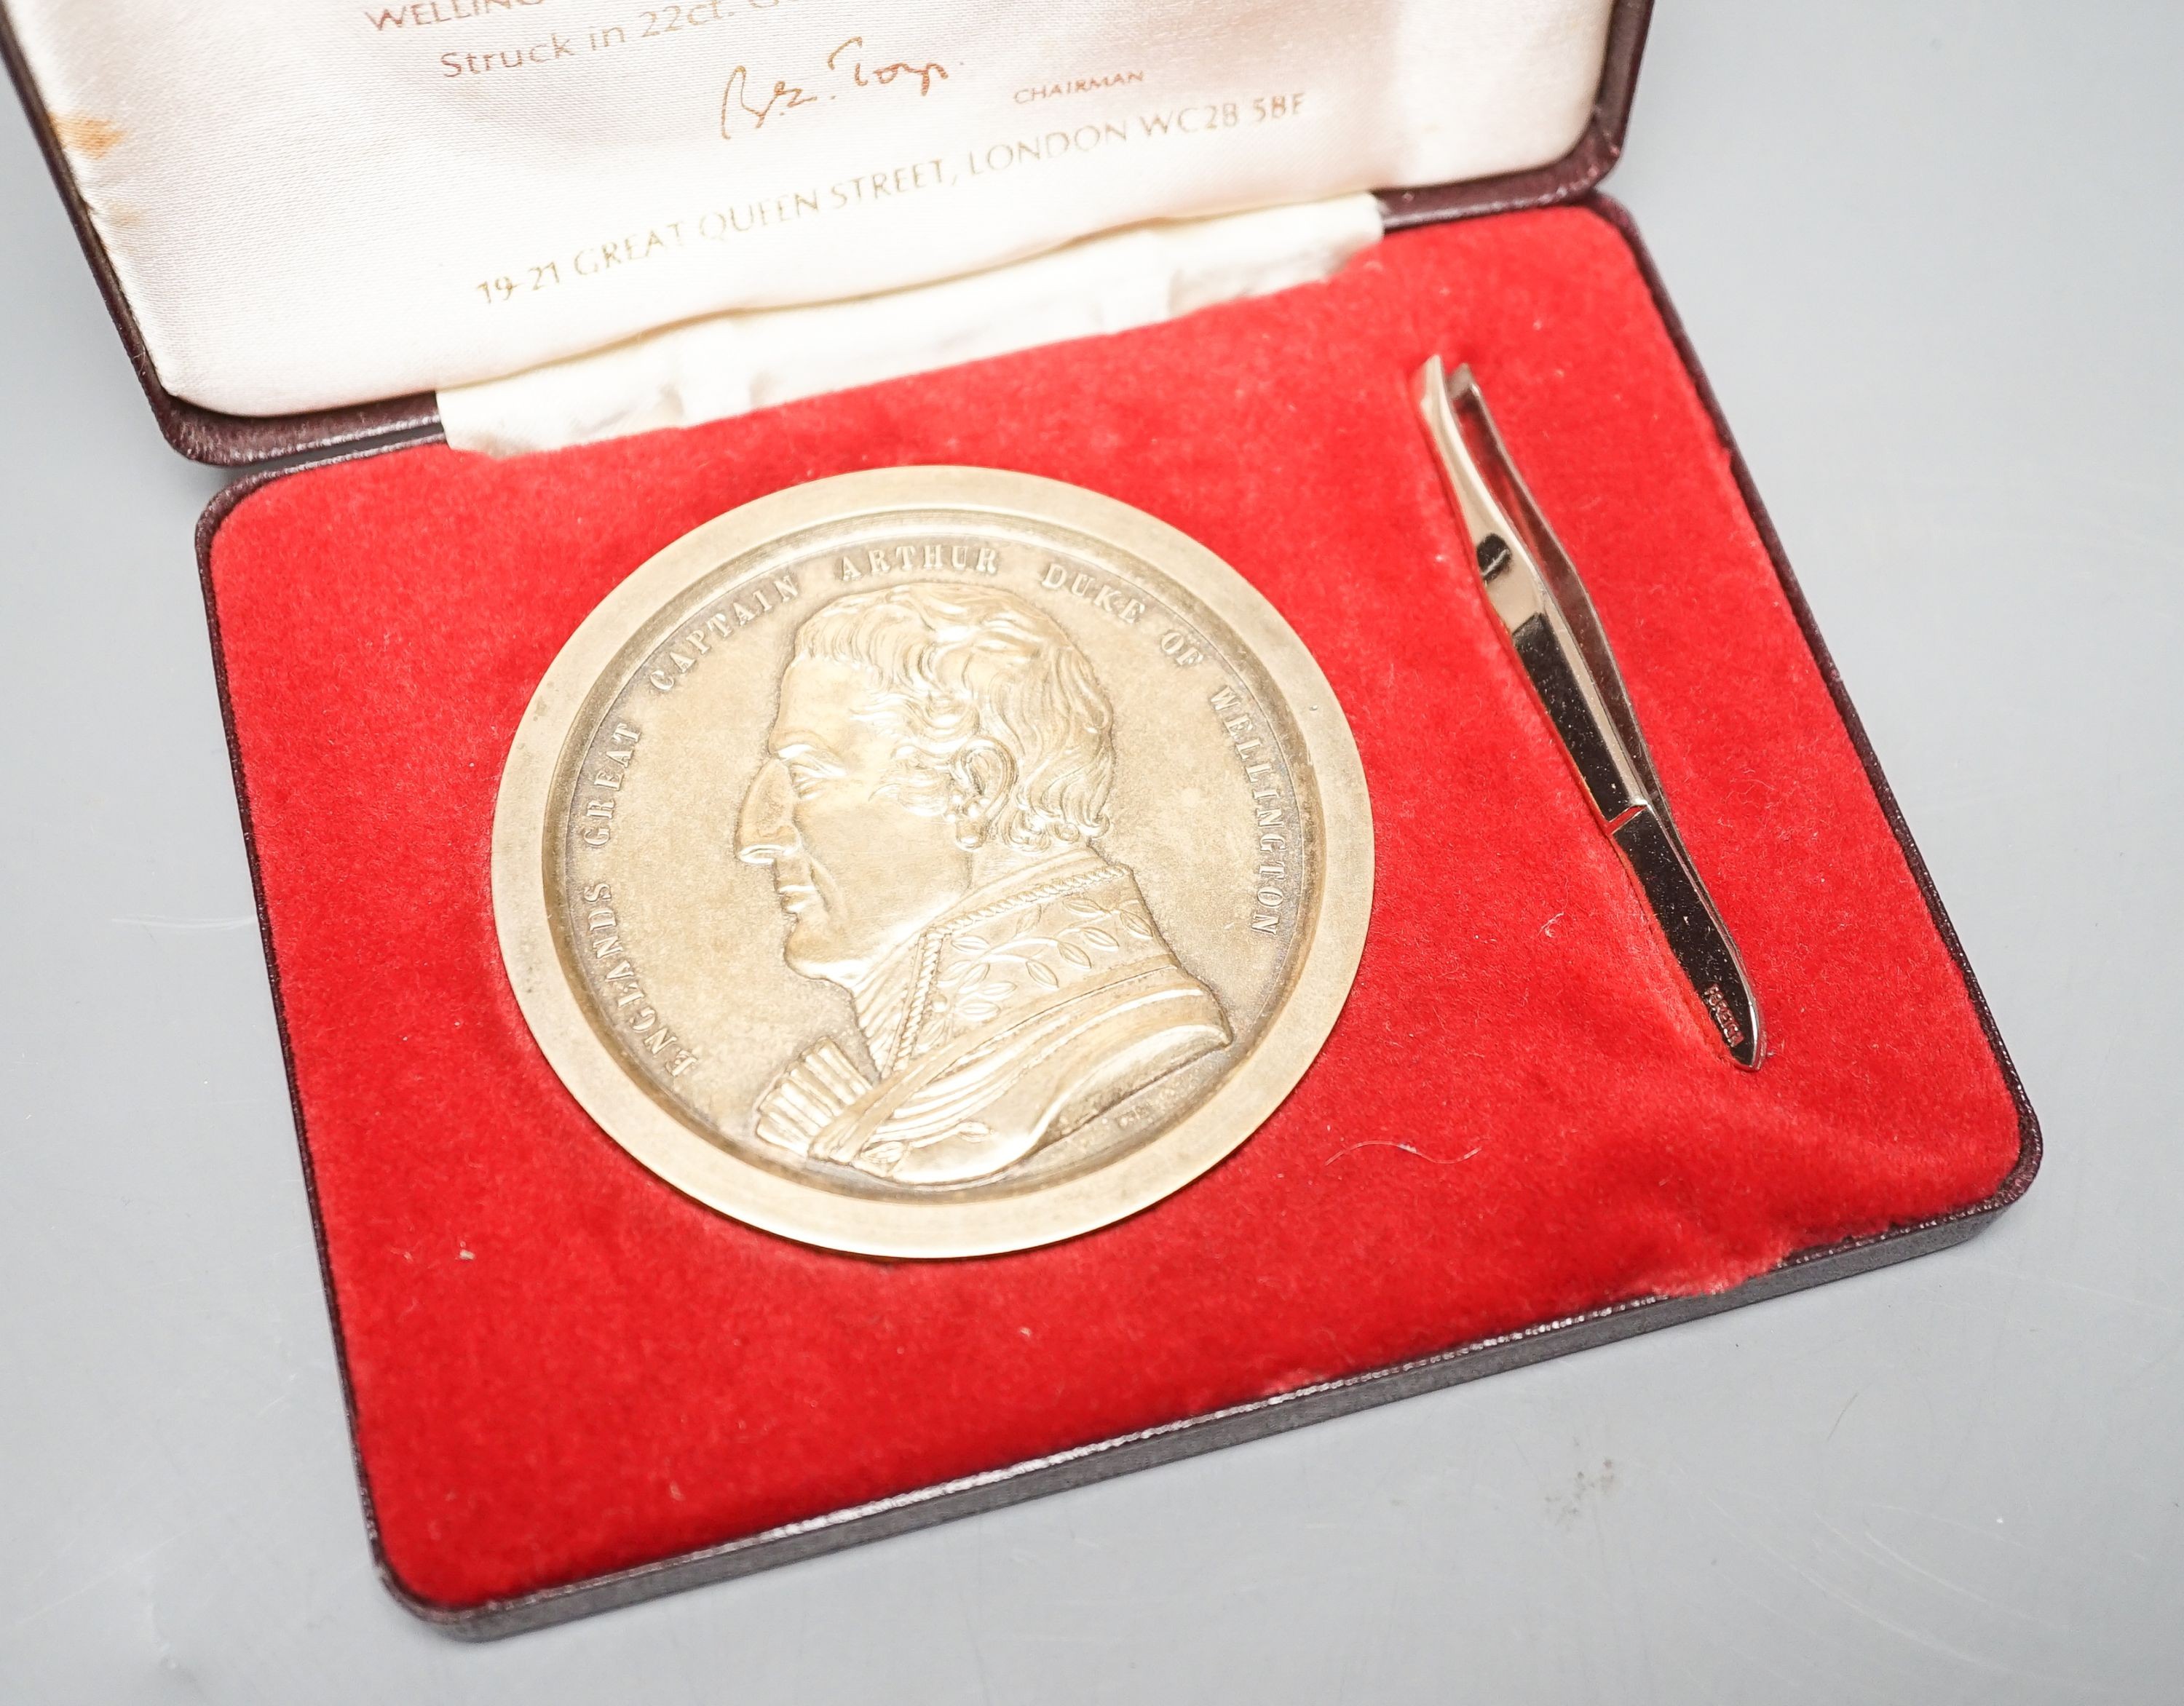 Toye, Kenning & Spencer ltd Arthur Duke of Wellington limited edition silver gilt commemorative medallion shaped box, 7.8cm diameter, cased